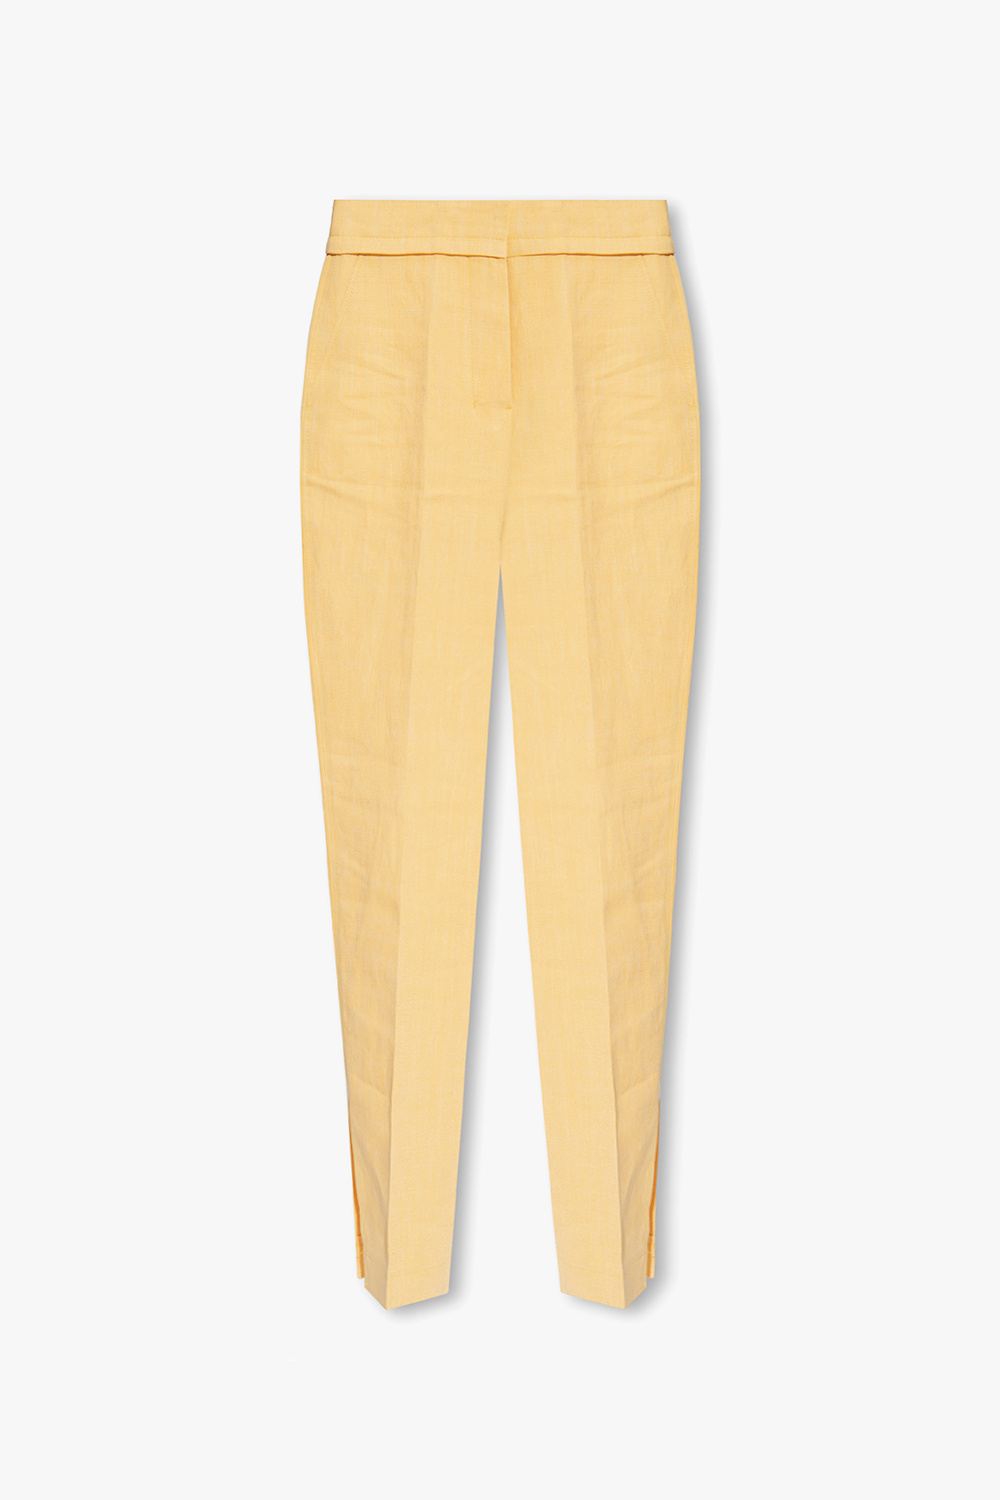 Jacquemus ‘Tibau’ pleat-front trousers